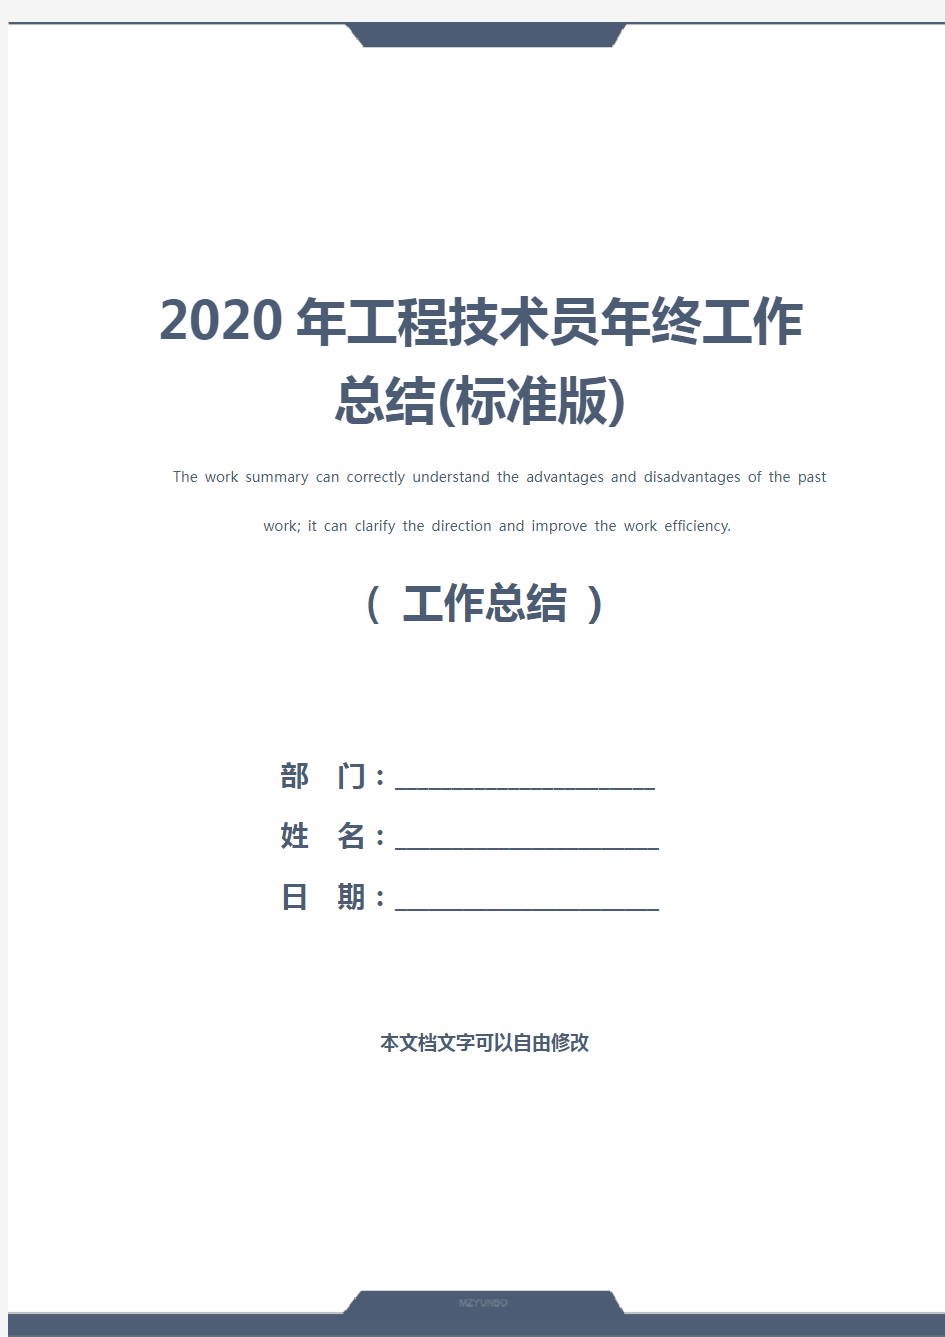 2020年工程技术员年终工作总结(标准版)